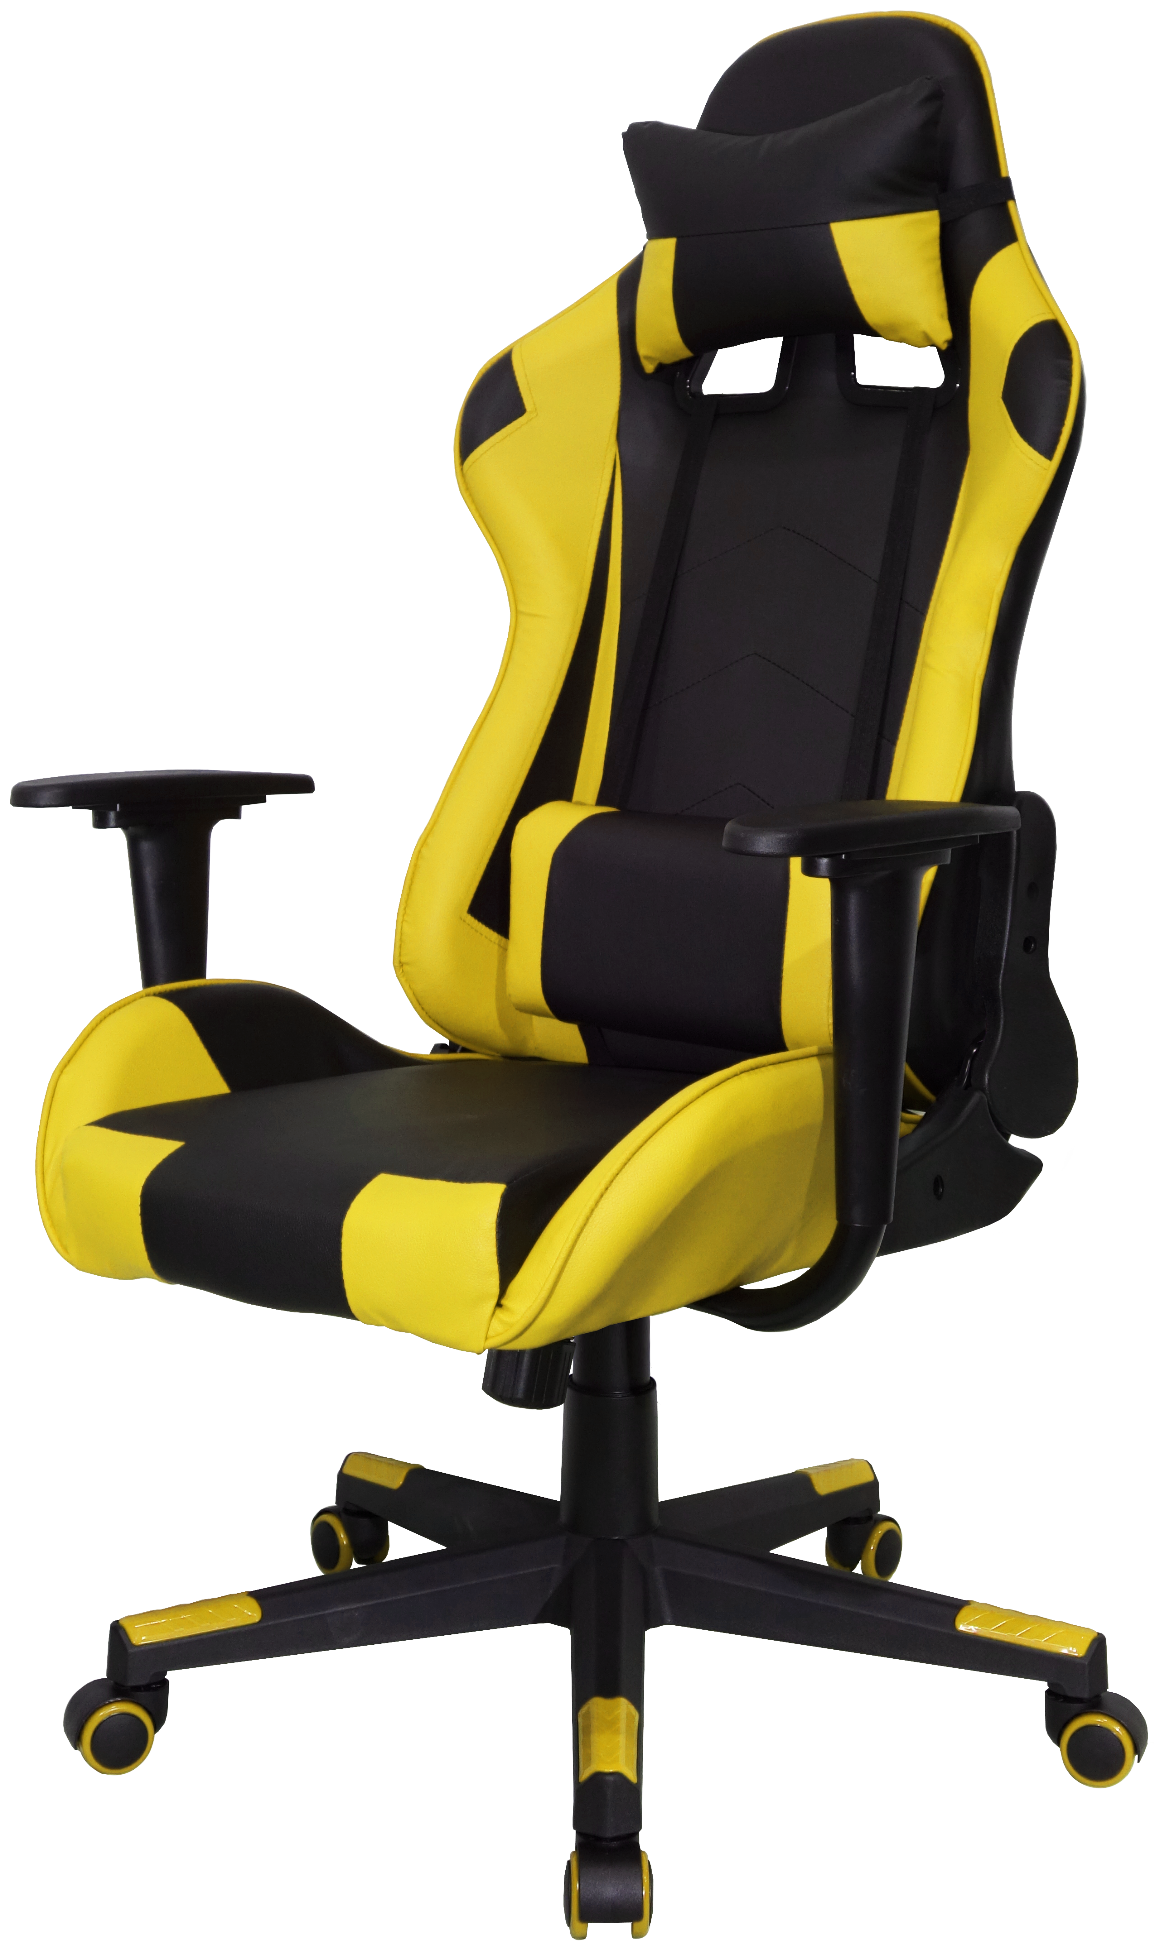 Игровое кресло Raybe K-5727 желтое 5727 Yellow .